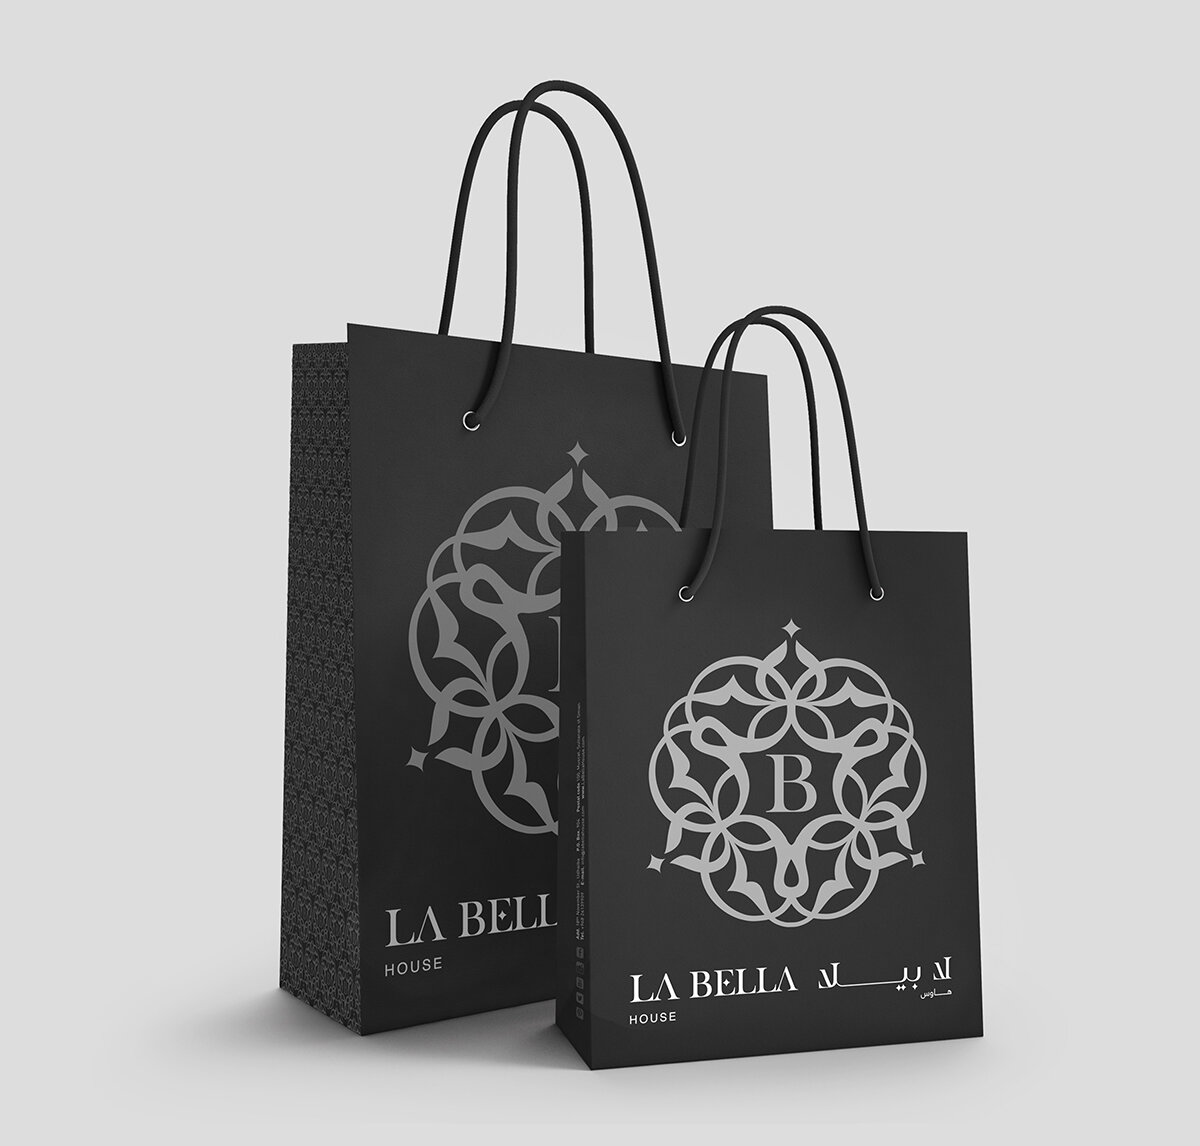 10_la_bella_oman_vip_spa_house_logo_bag_branding_image_circle_visual_communication_creative_agency_lebanon.jpg